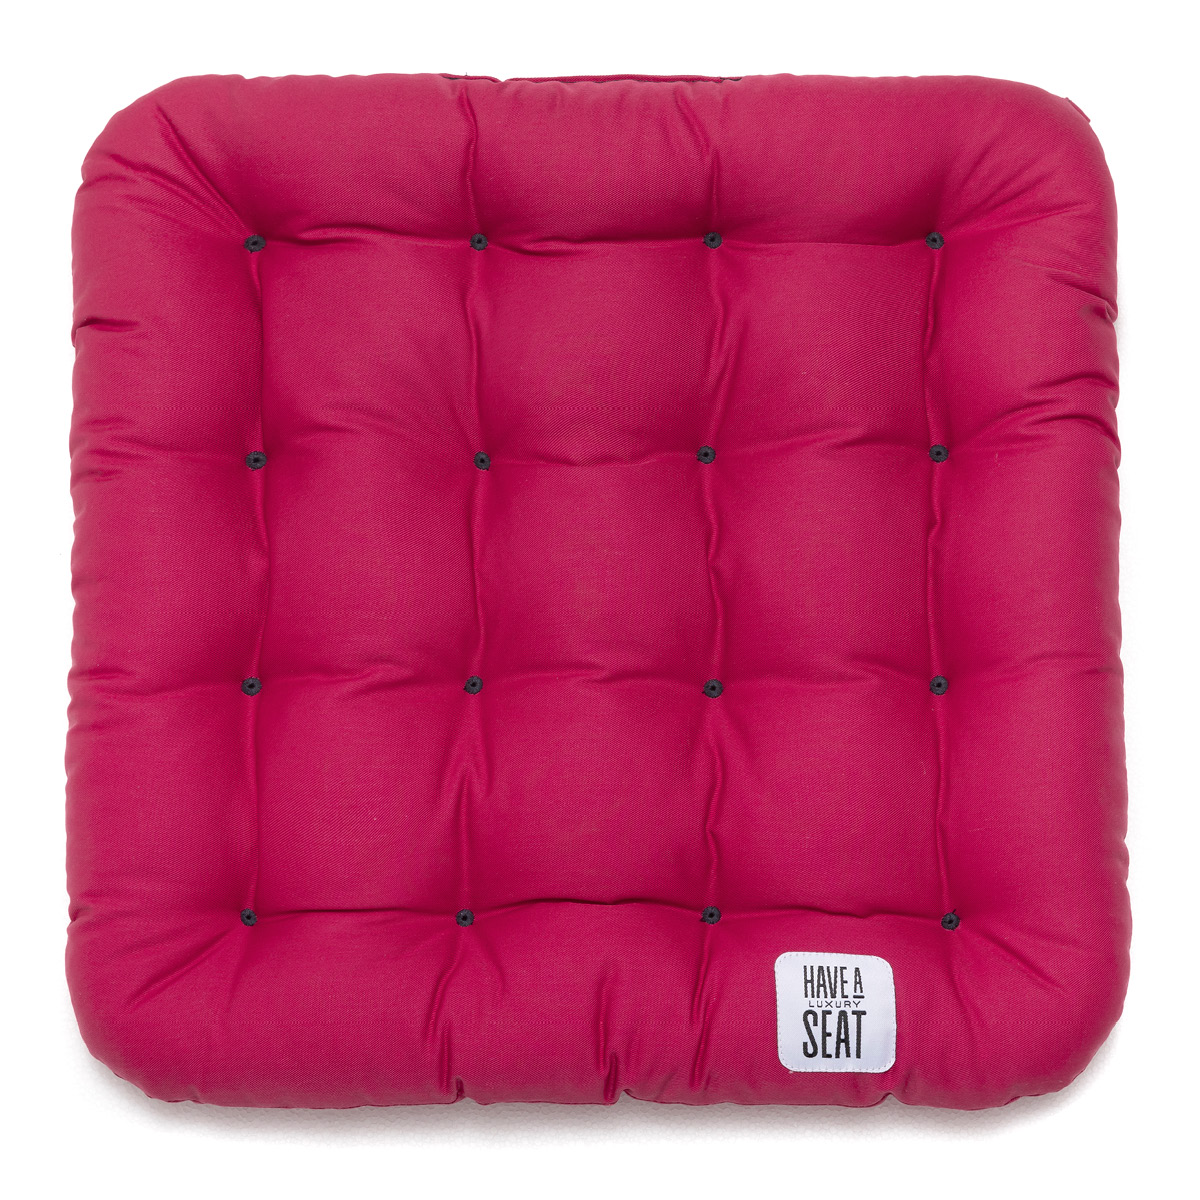 Gepolstertes Stuhlkissen / Matratzenkissen 40x40 cm mit Thermo-Komfortpolsterung, Baumwoll-Mischgewebe Hot-Pink | HAVE A SEAT Living